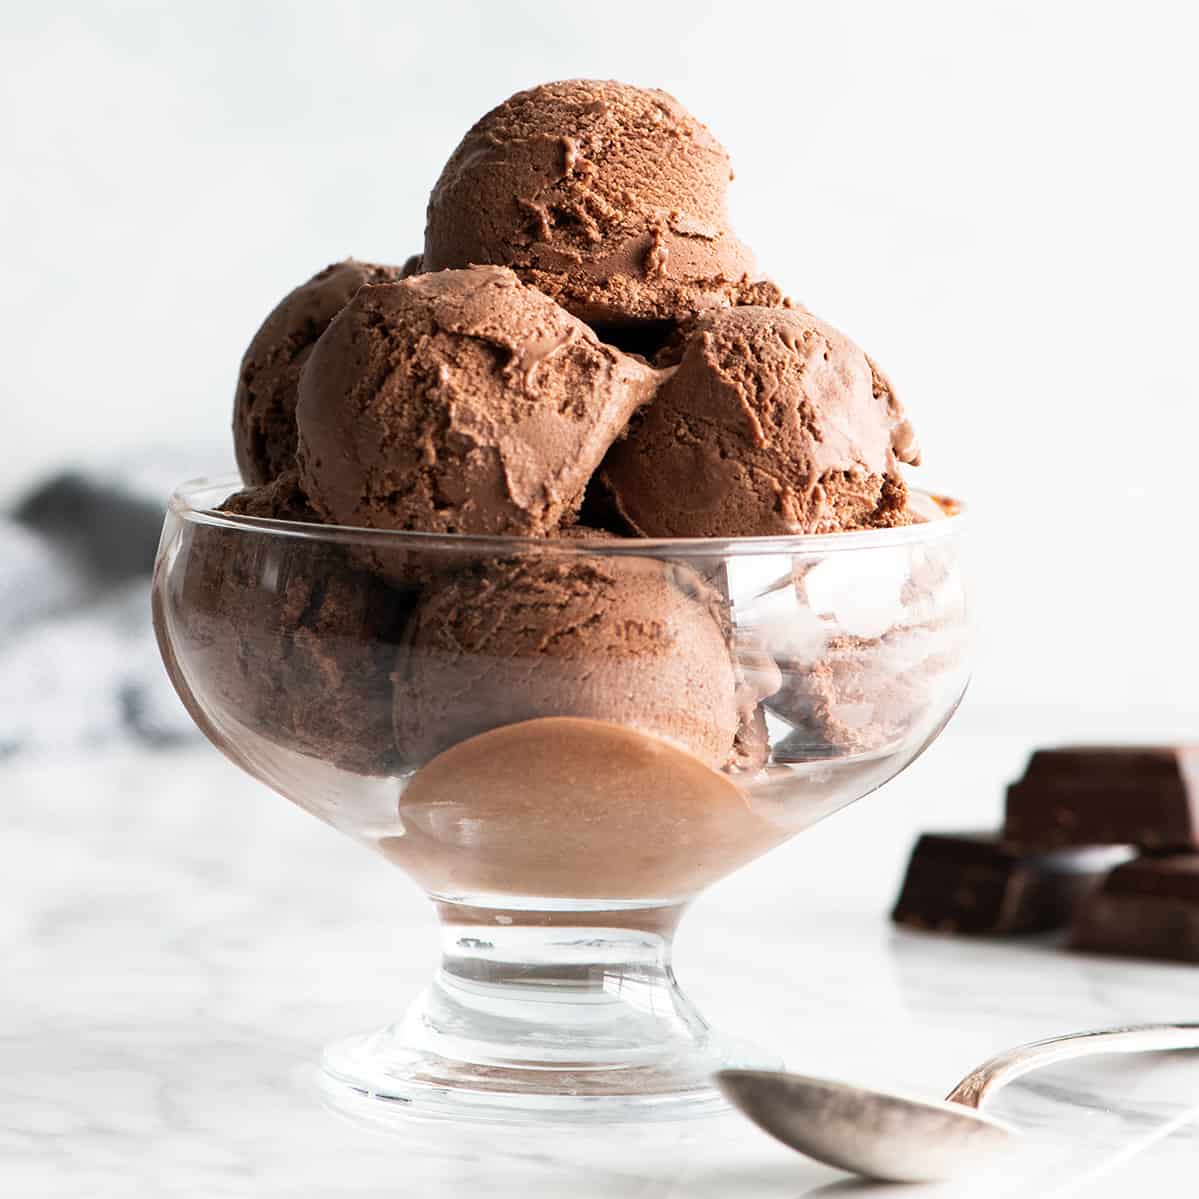 Choco ice. Шоколадное мороженое. Шоколадный пломбир. Мороженое с шоколадом. Десерт из какао.